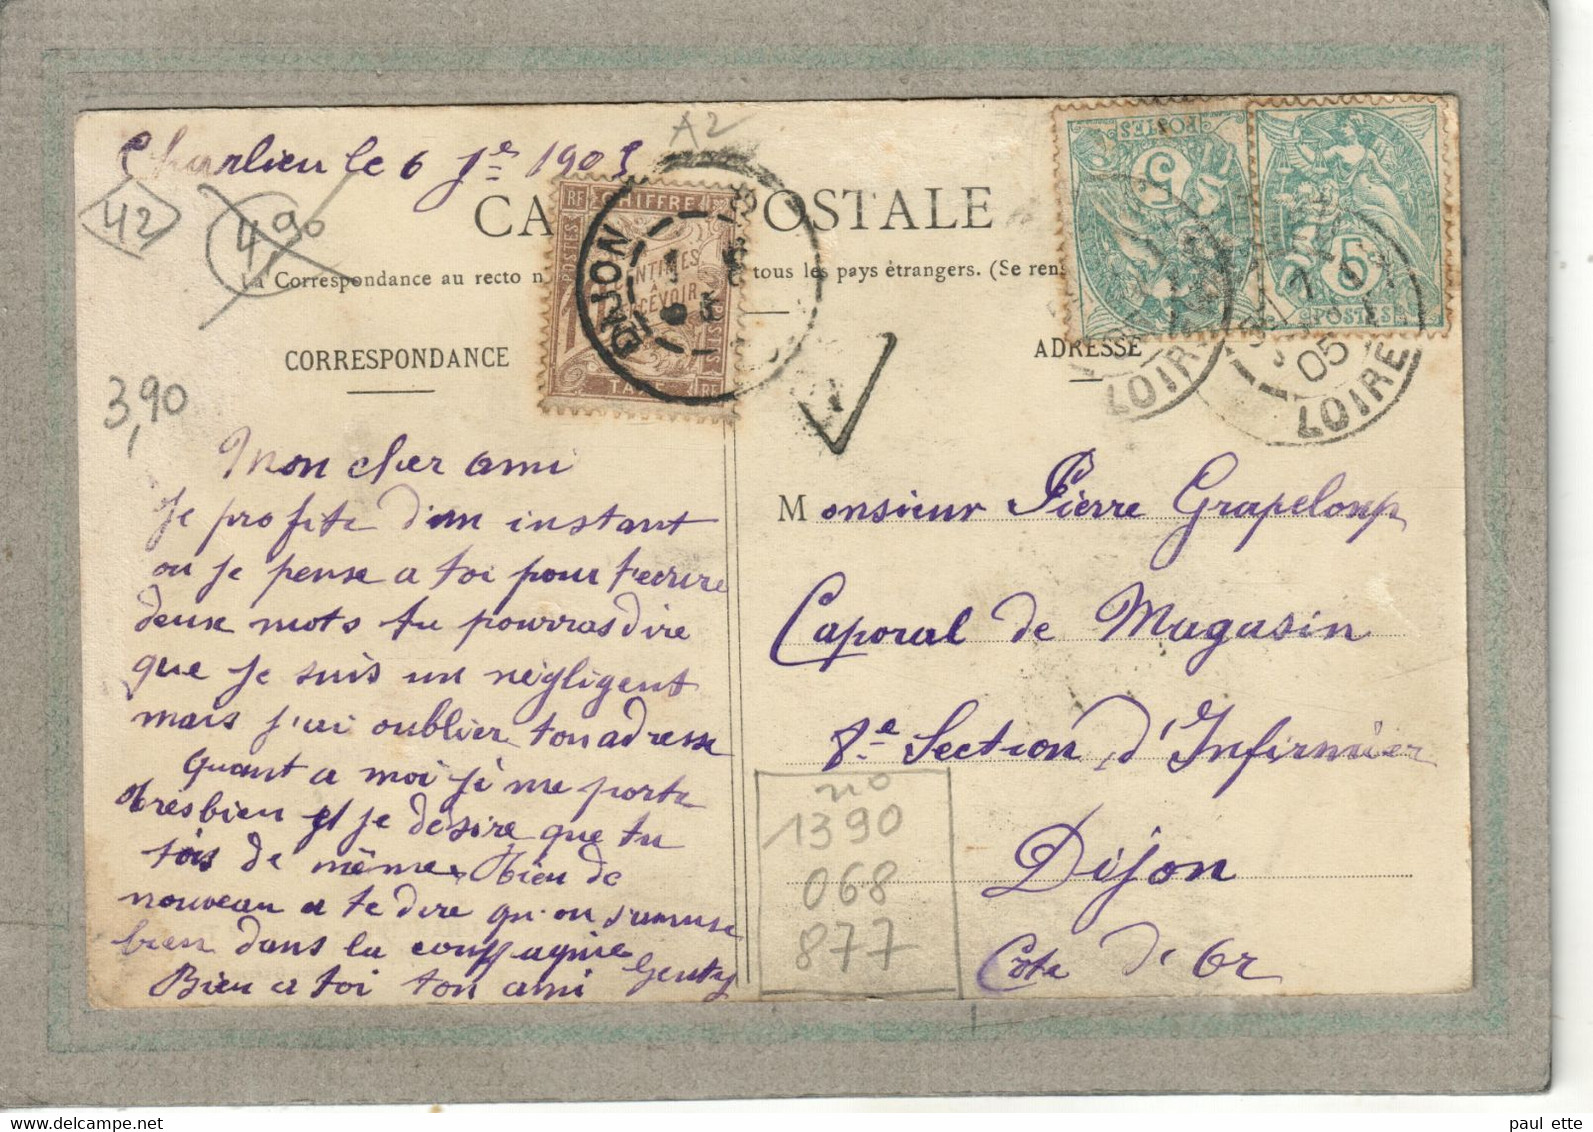 CPA - (42) CHARLIEU - Thème: ARBRE - Aspect Des Platanes Du Boulevard Thiers En 1905 - Charlieu